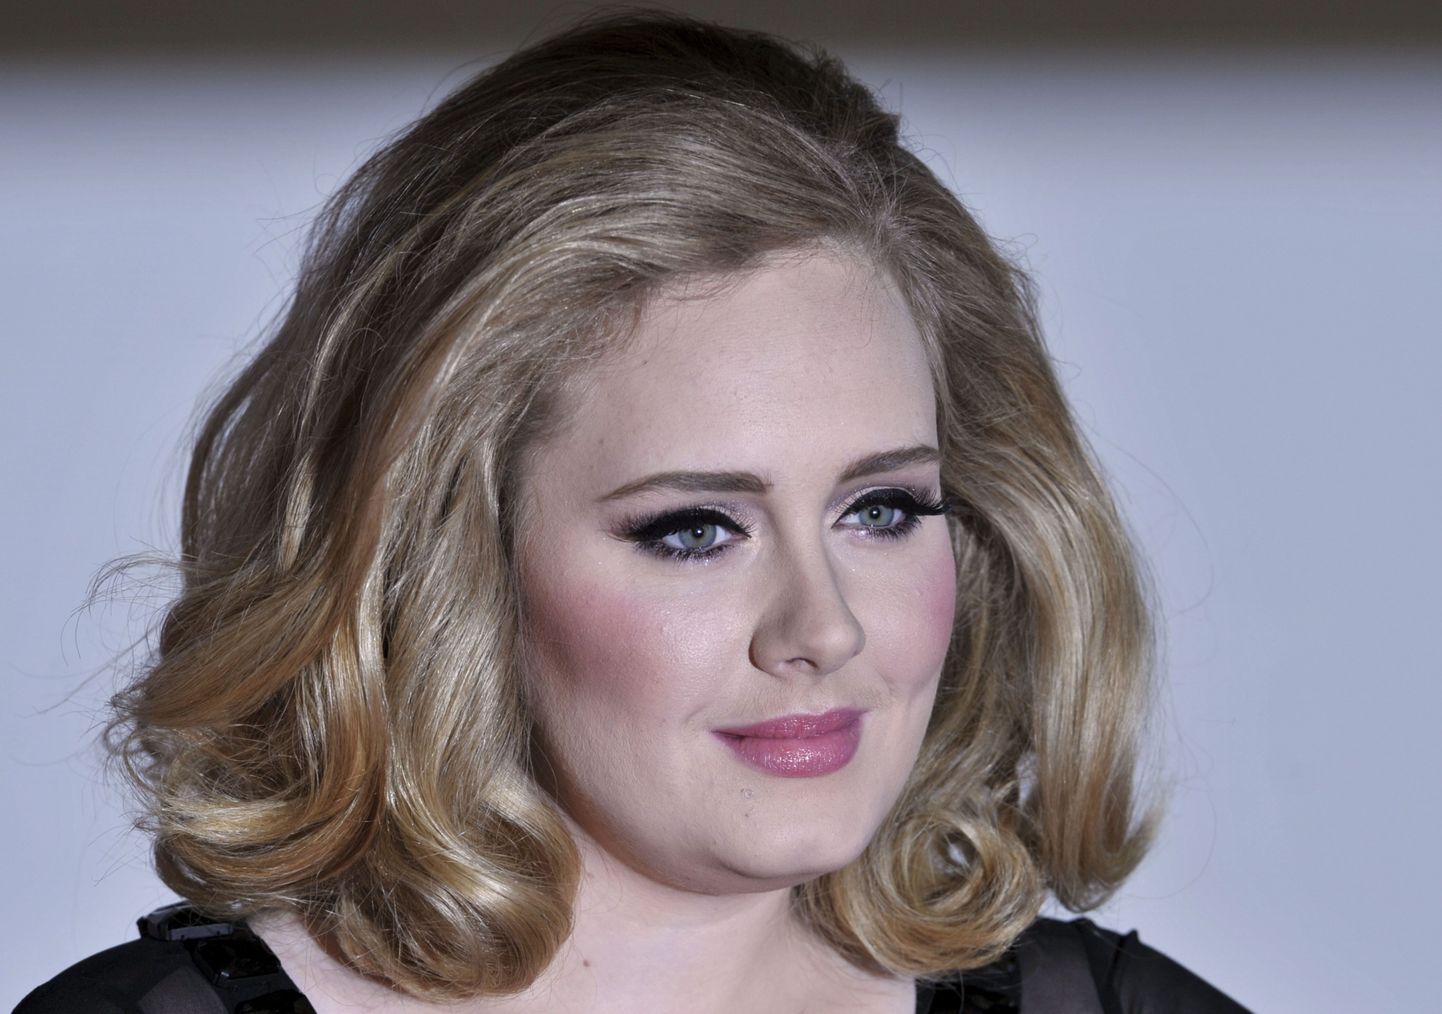 Olümpiamängude avatseremoonial saab kuulda ka Adele'i muusikat.